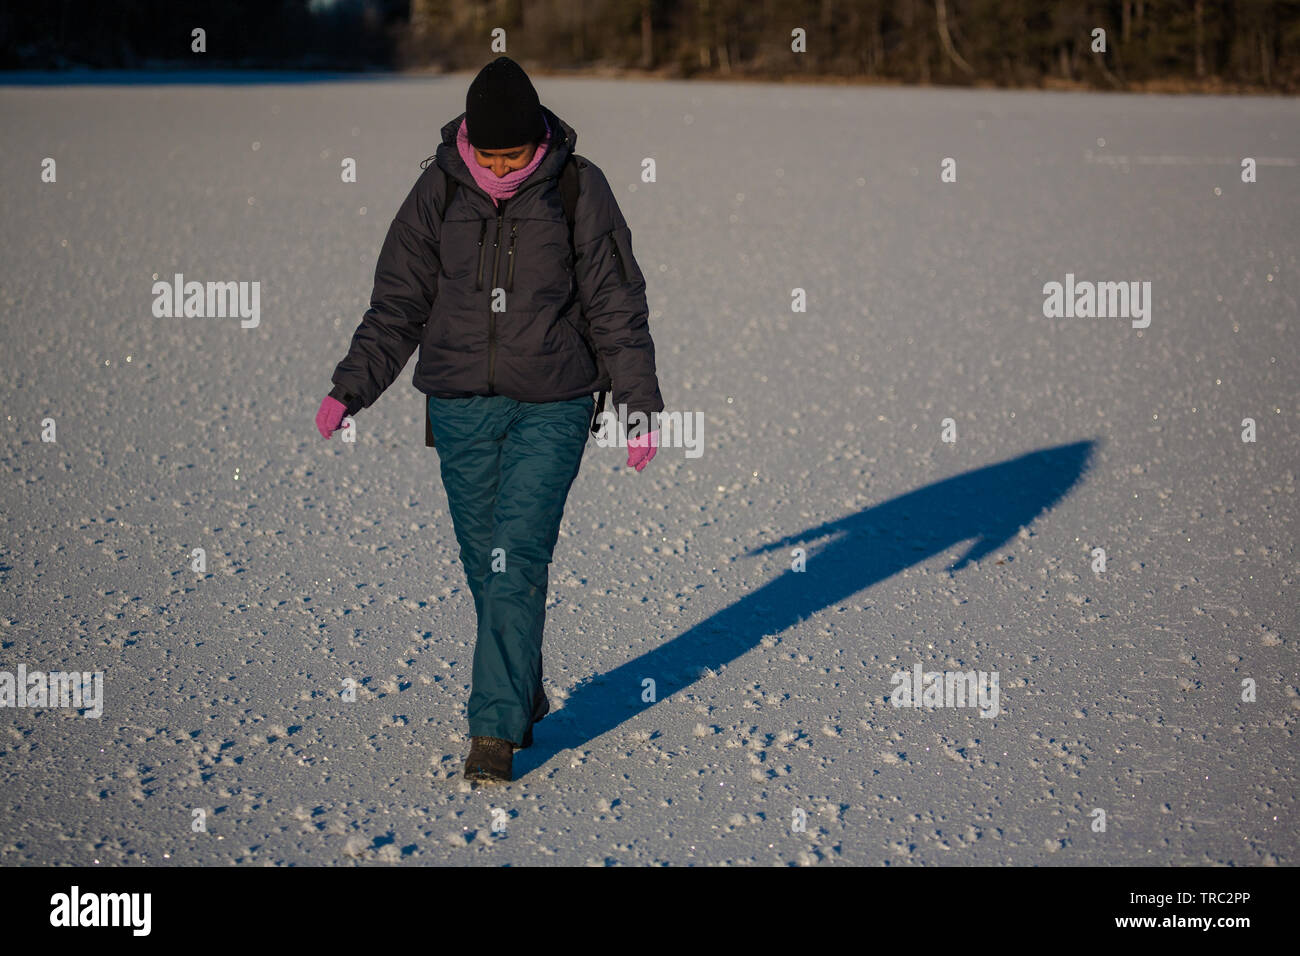 Weibliche Wanderer im Winter Kleidung auf dem Eis des Sees Ravnsjø, våler  Kommune, Østfold, Norwegen. Ravnsjø ist ein Teil des Wassers, das System  namens Morsavassdraget Stockfotografie - Alamy